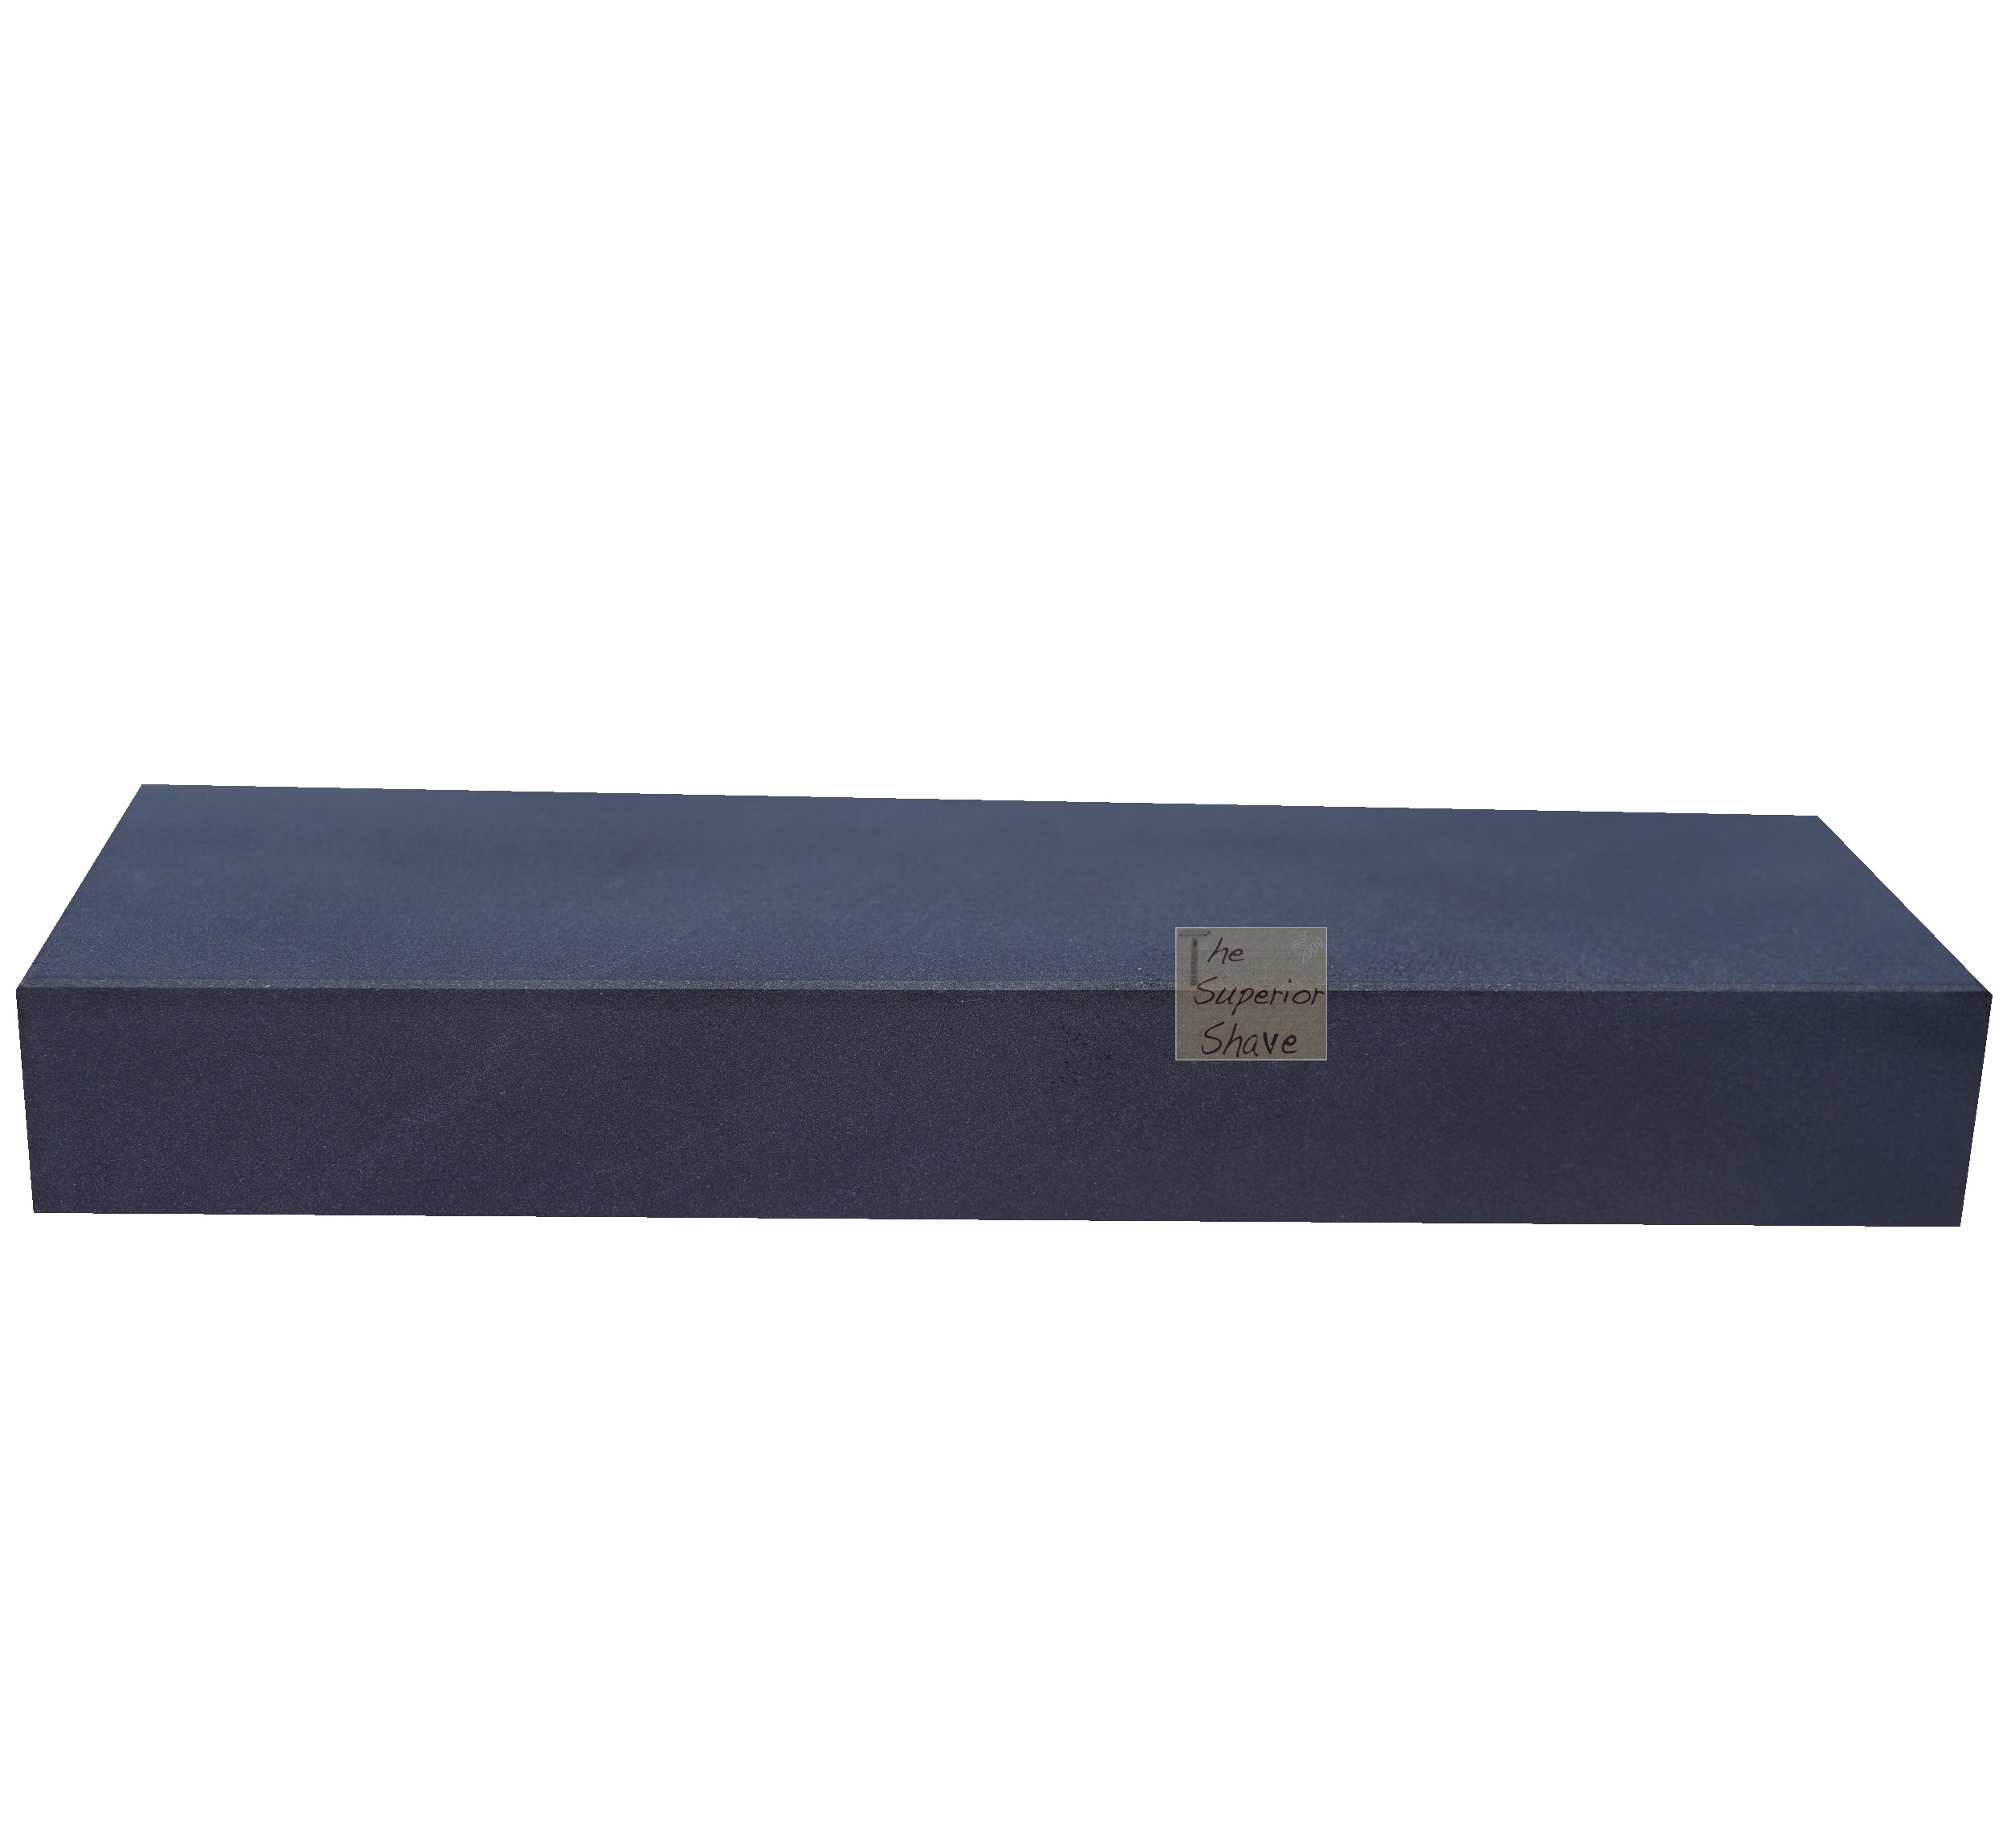 SPECIAL BLACK Wide Bench Stone 10 x 3 x 1 ID 1102B43 - Dan's Whetstone